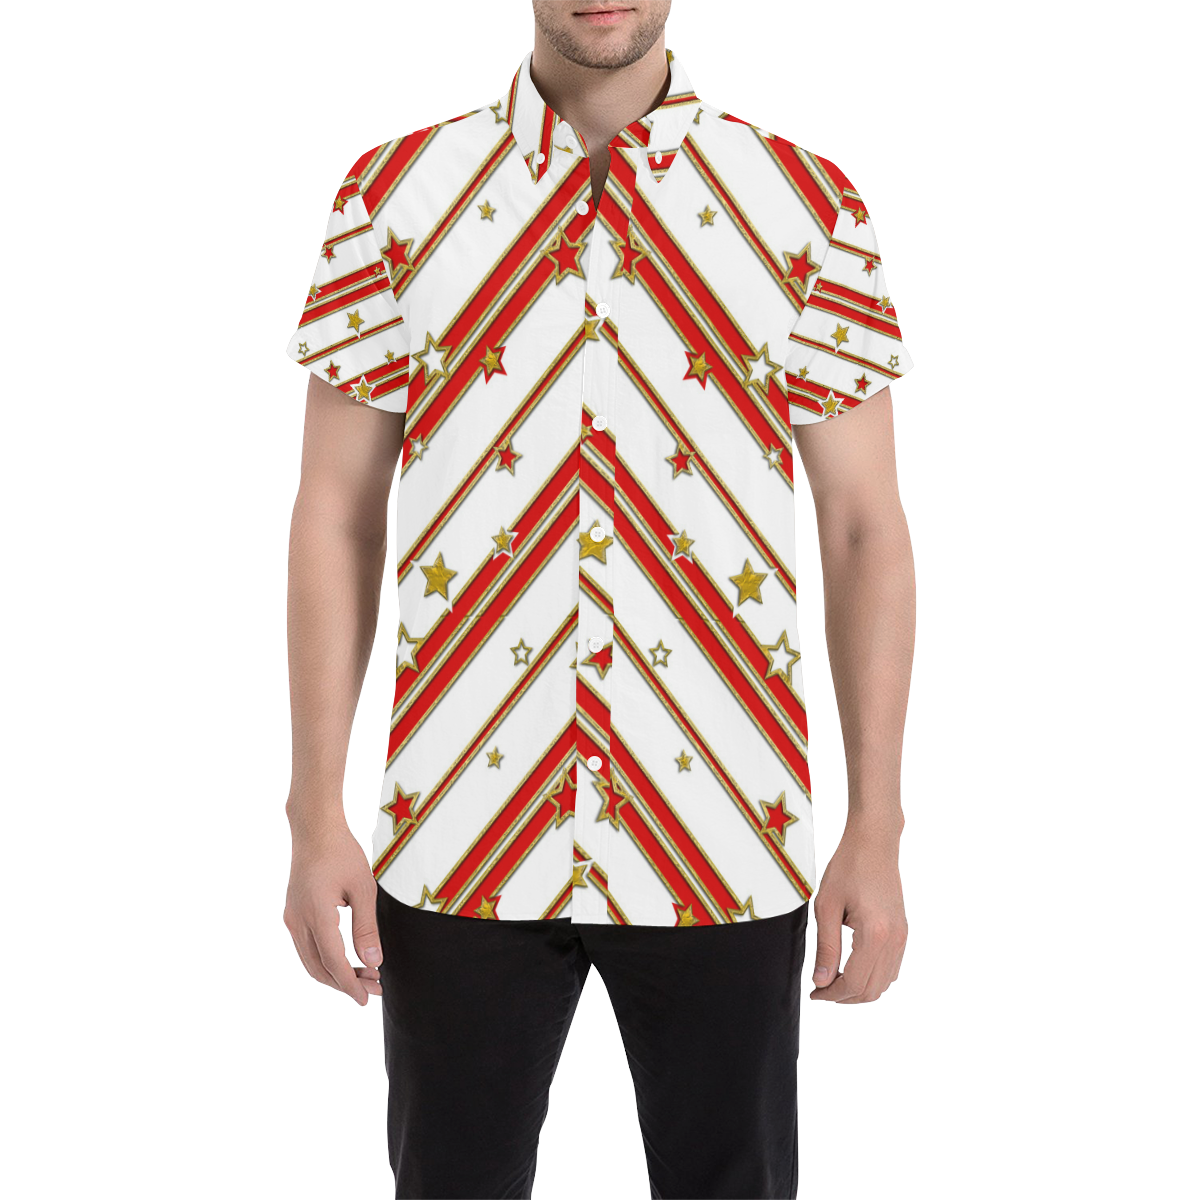 STARS & STRIPES red gold white Men's All Over Print Short Sleeve Shirt (Model T53)